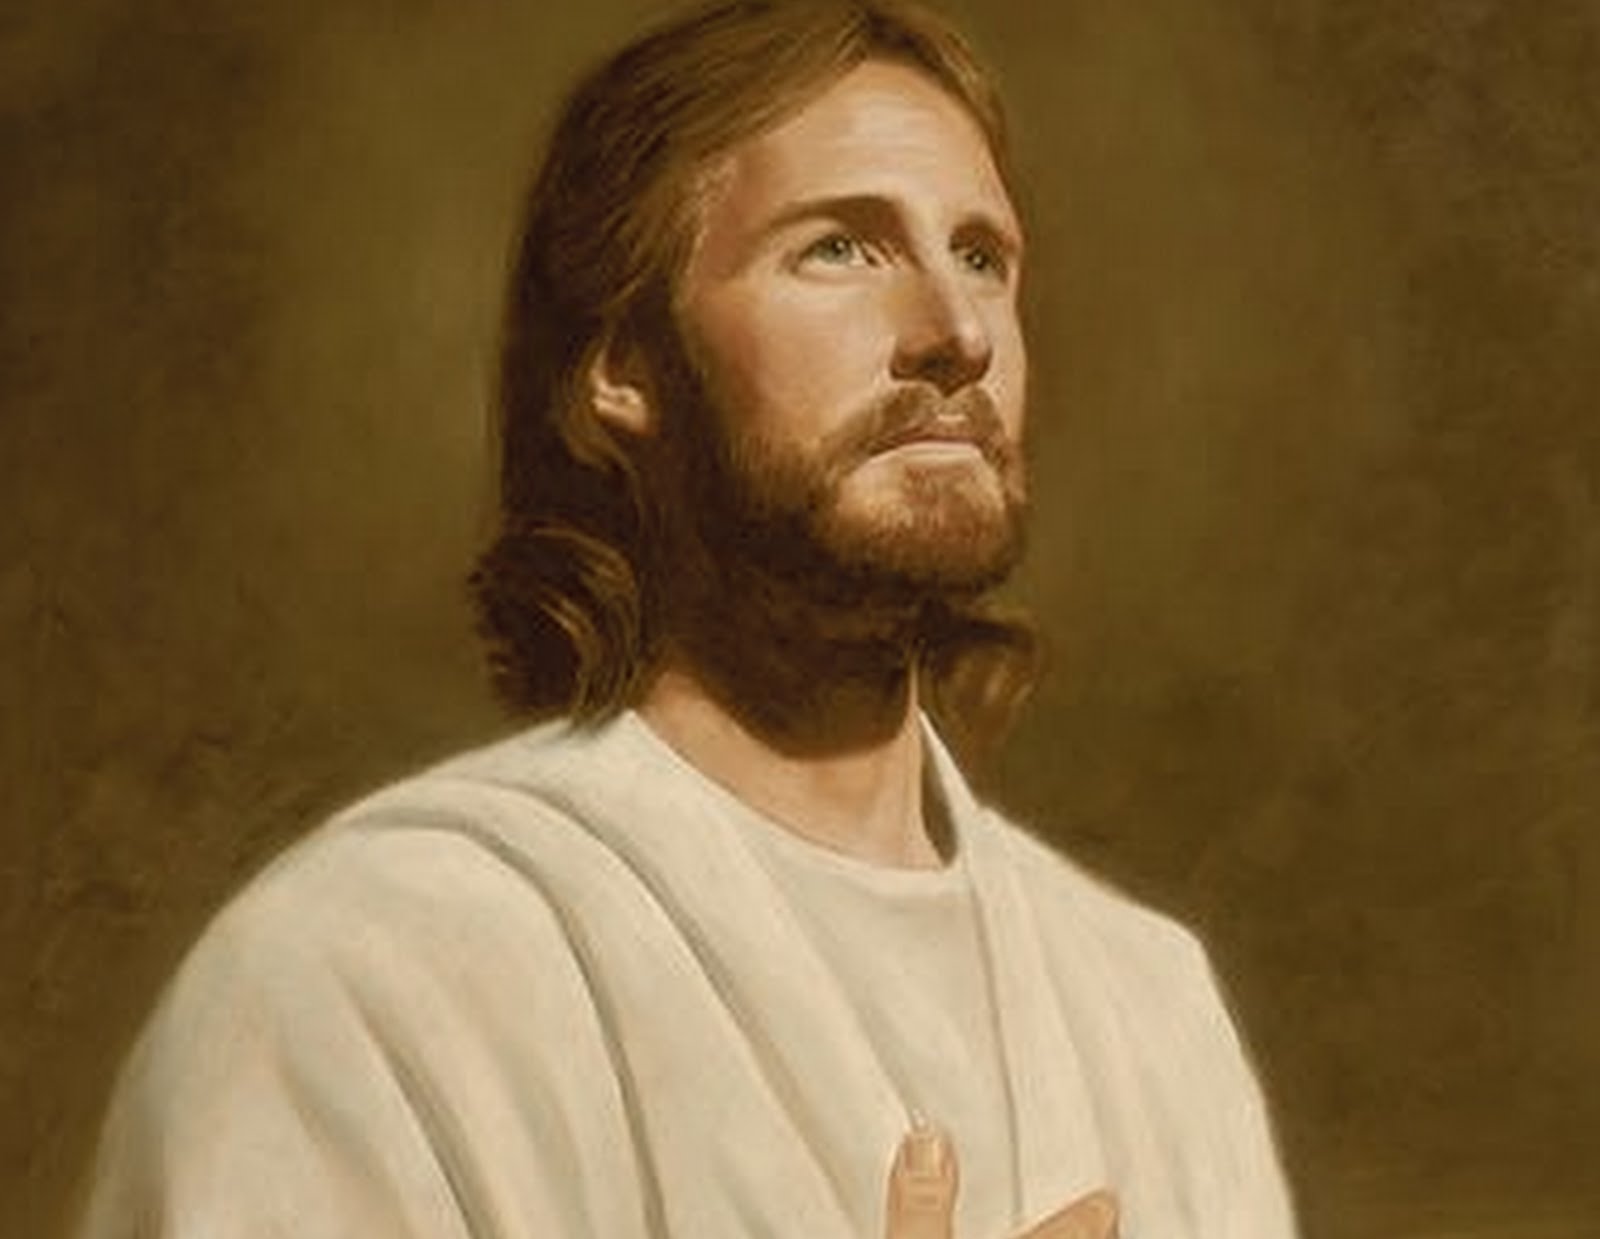 Fotos de jesus para perfil